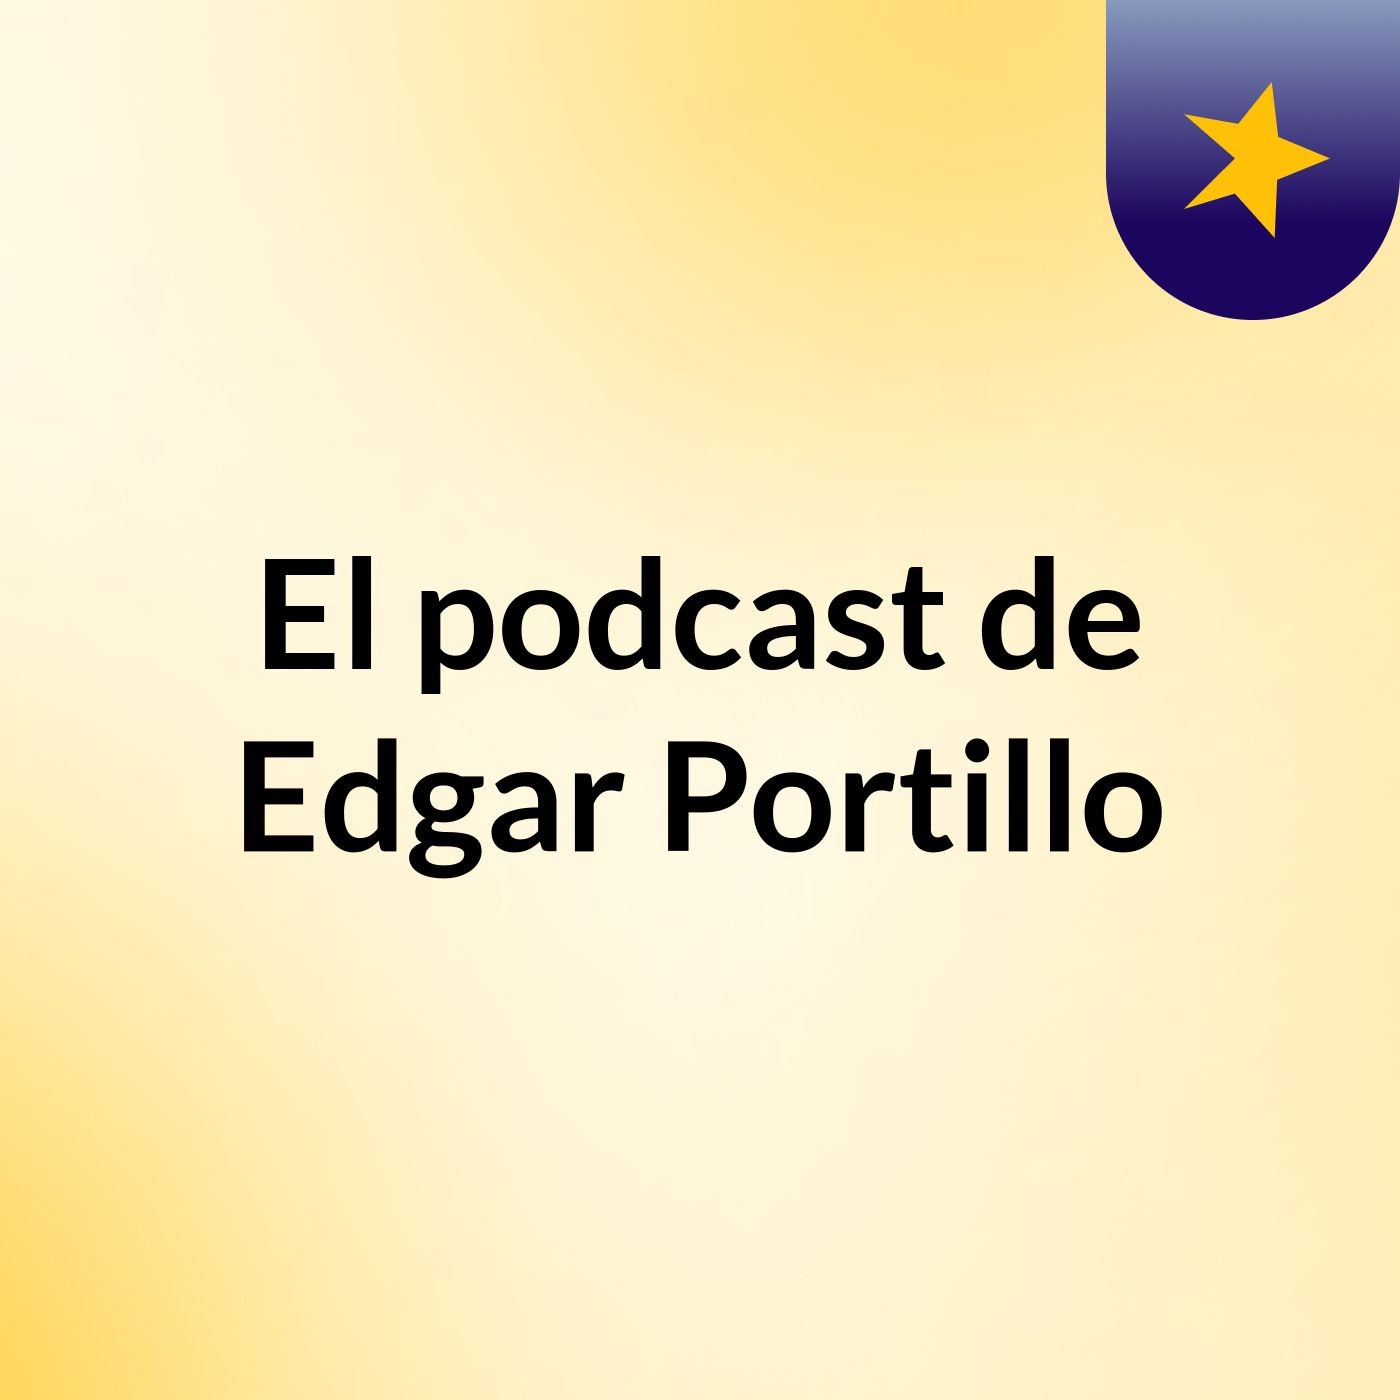 El podcast de Edgar Portillo